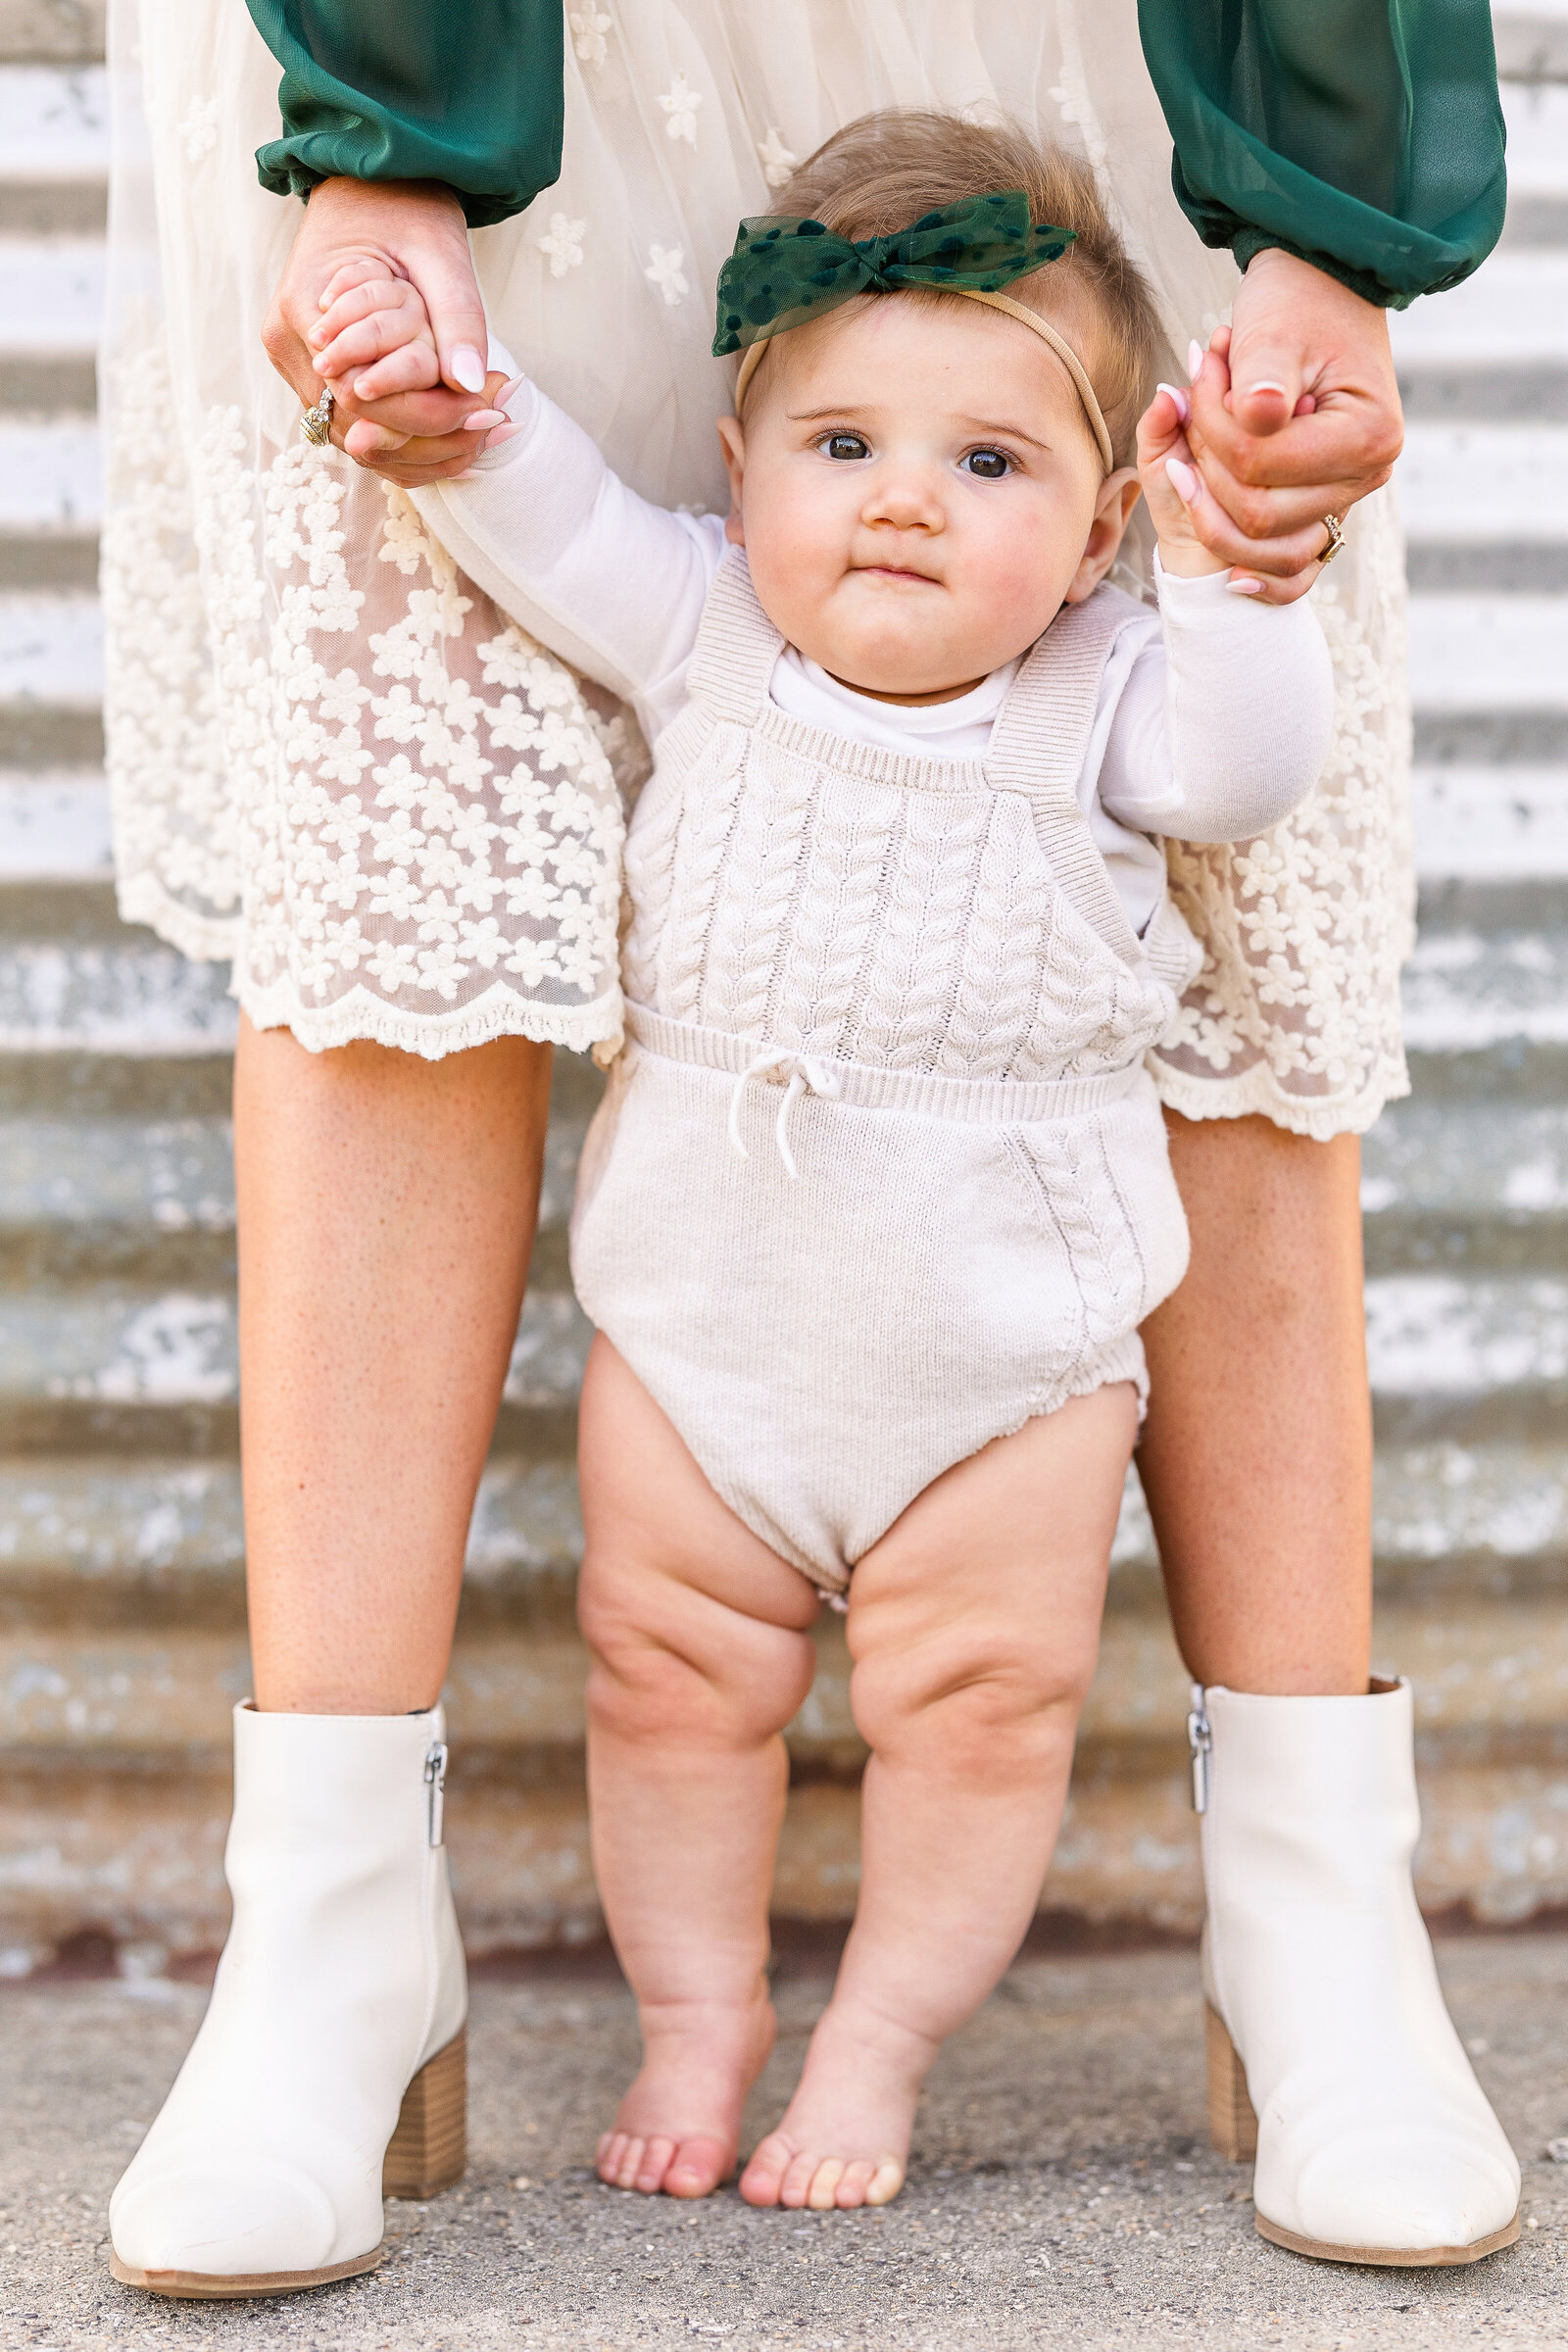 baby-standing-between-her-mothers-legs-holding-hands